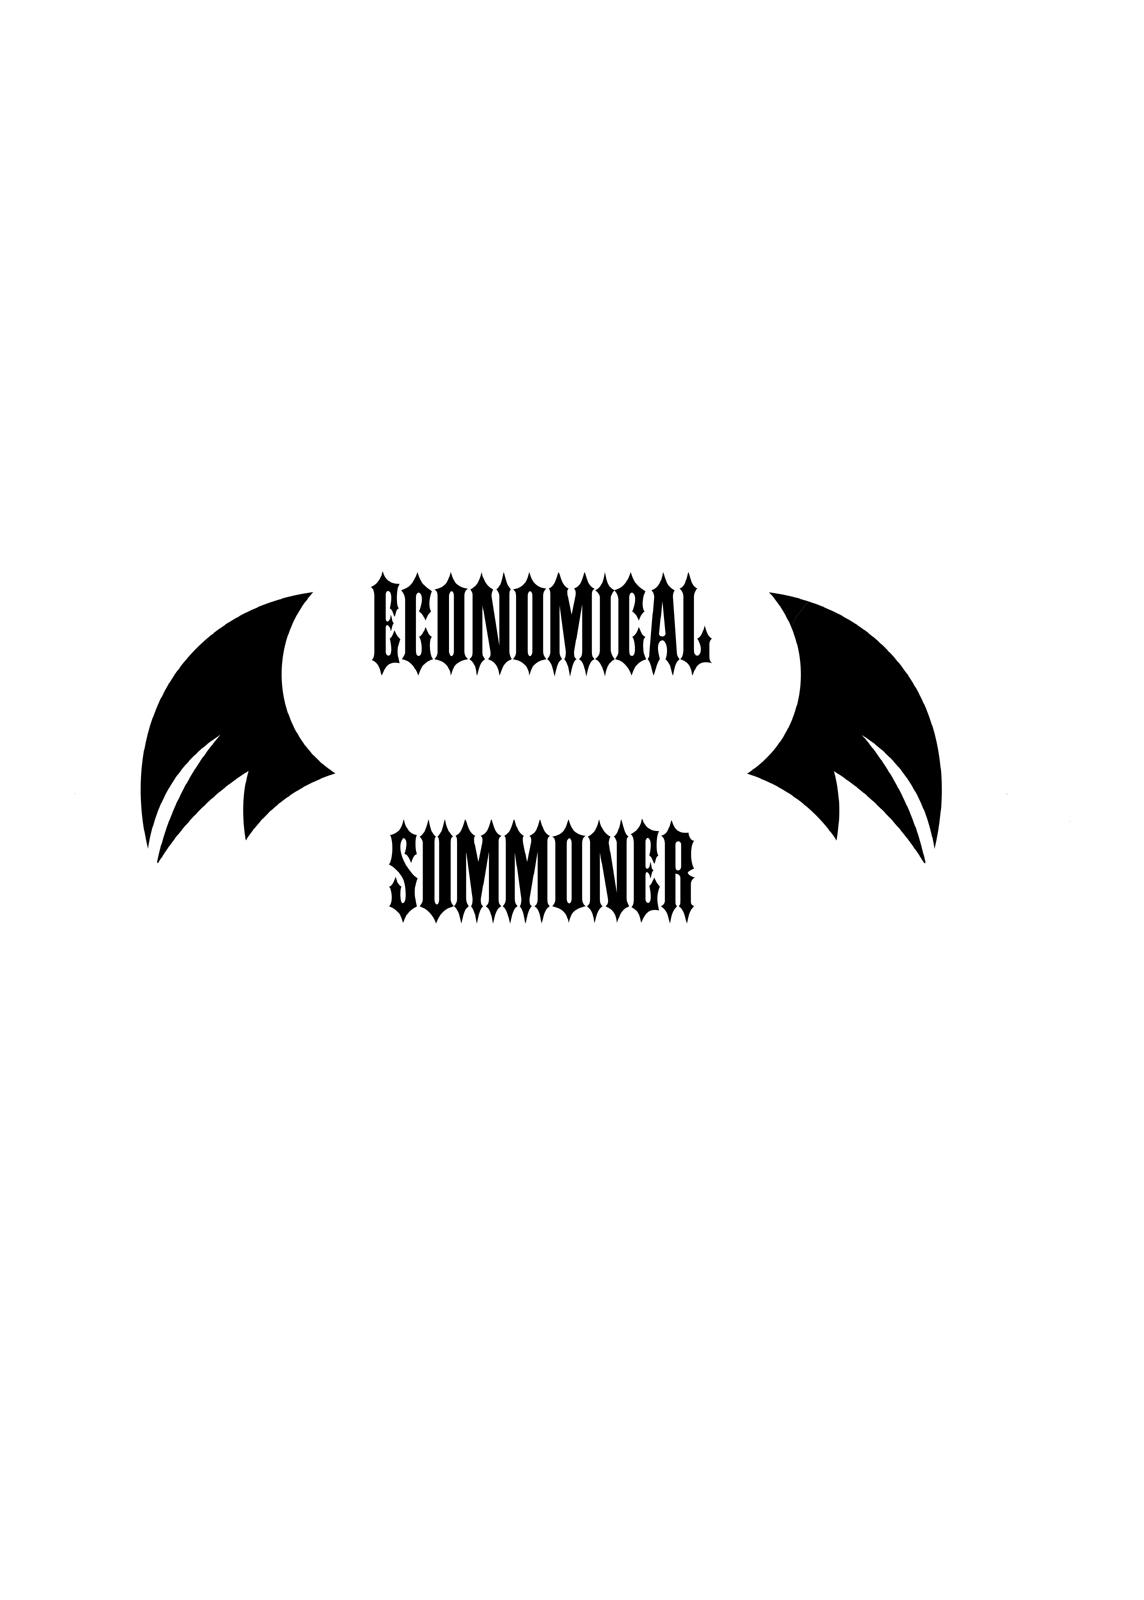 Economical Summoner 0